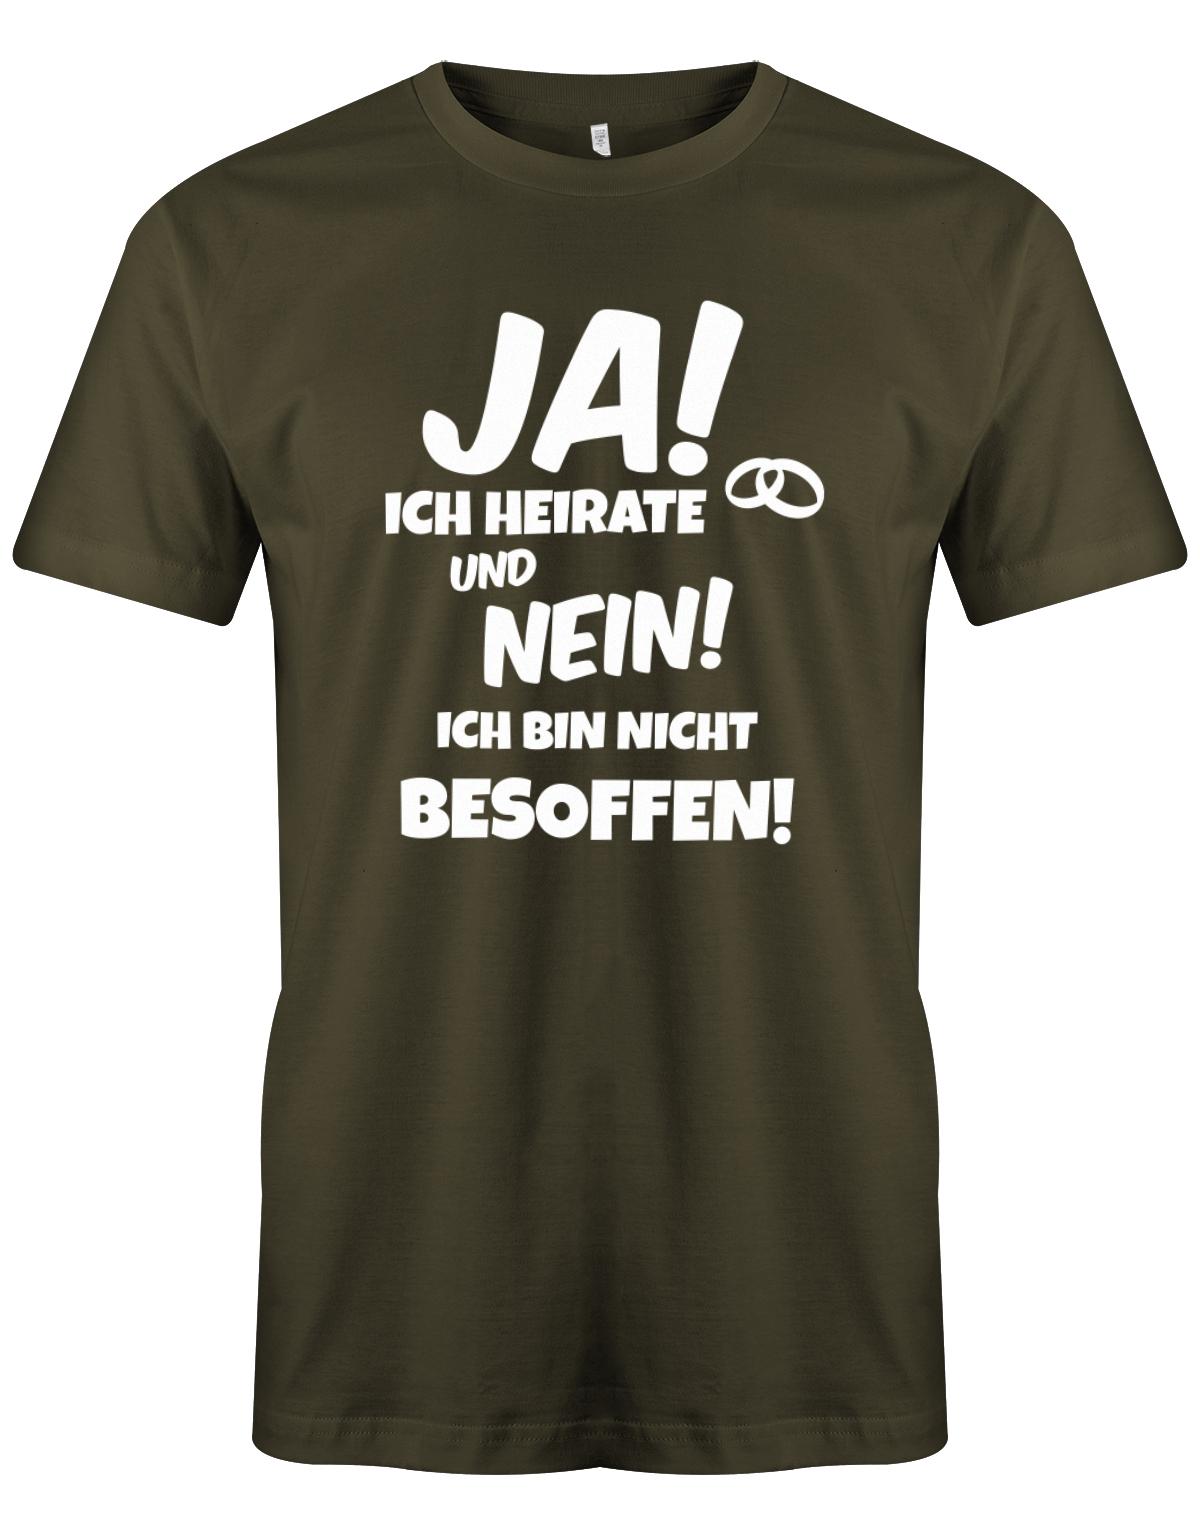 Ja-ich-heirate-und-nein-ich-bin-nicht-besoffen-JGA-Herren-Shirt-Army